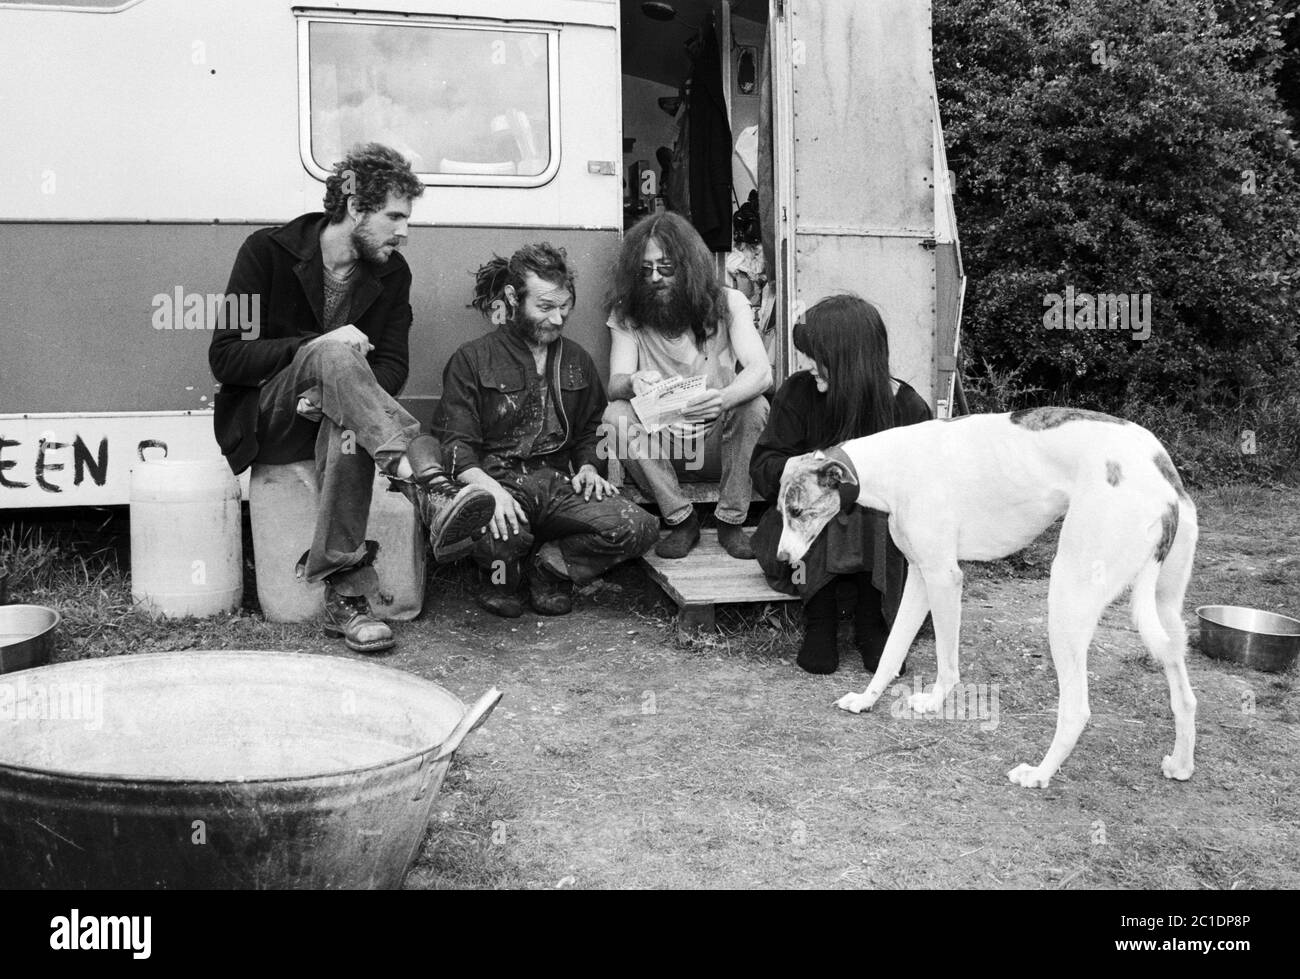 Un groupe de voyageurs bavarde à l'extérieur de leur caravane sur un site près de Stonehenge au début des années 1990. ROYAUME-UNI. Banque D'Images